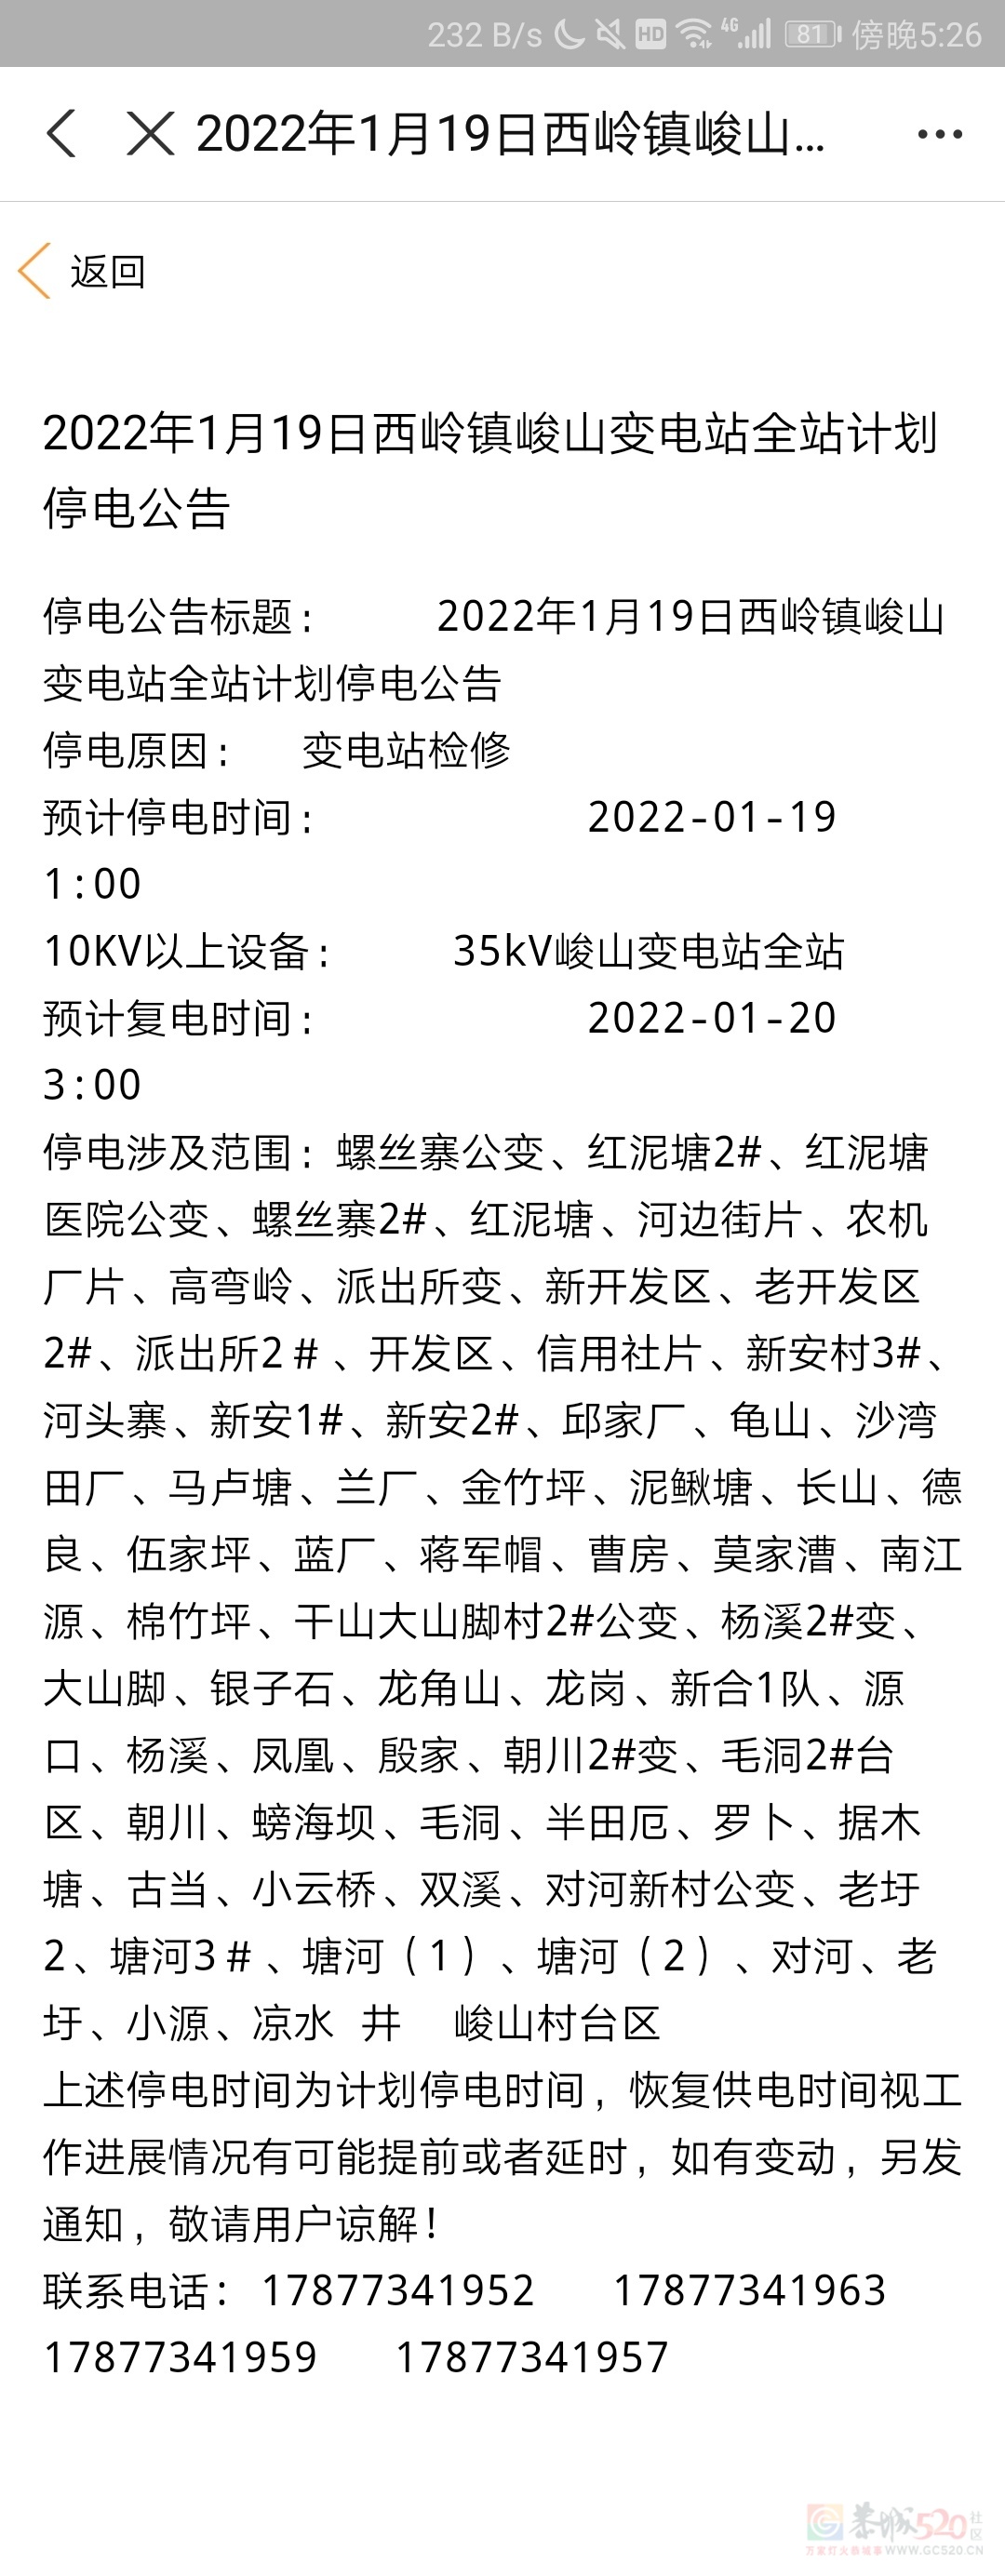 2022年1月19日西岭镇峻山变电站全站计划停电公告348 / 作者:遗憾太多了 / 帖子ID:292109